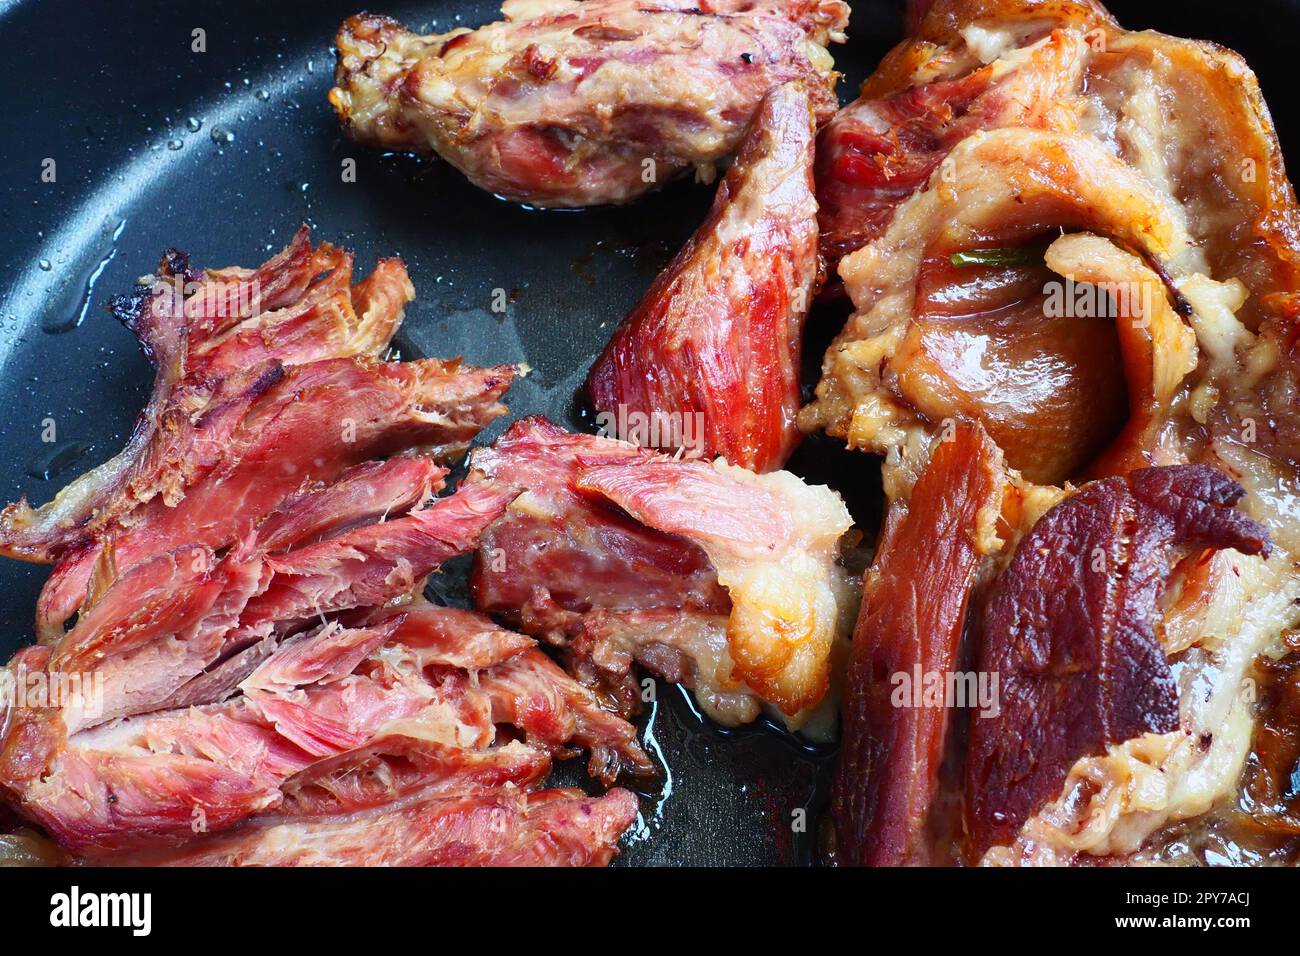 Épaule ou genou de porc fumé rôti. Délicieuse viande sur une plaque de cuisson noire avec des gouttes d'huile végétale, sortie du four. Spécialité de porc pour le dîner dans un restaurant et déjeuner en famille. Viande rouge Banque D'Images